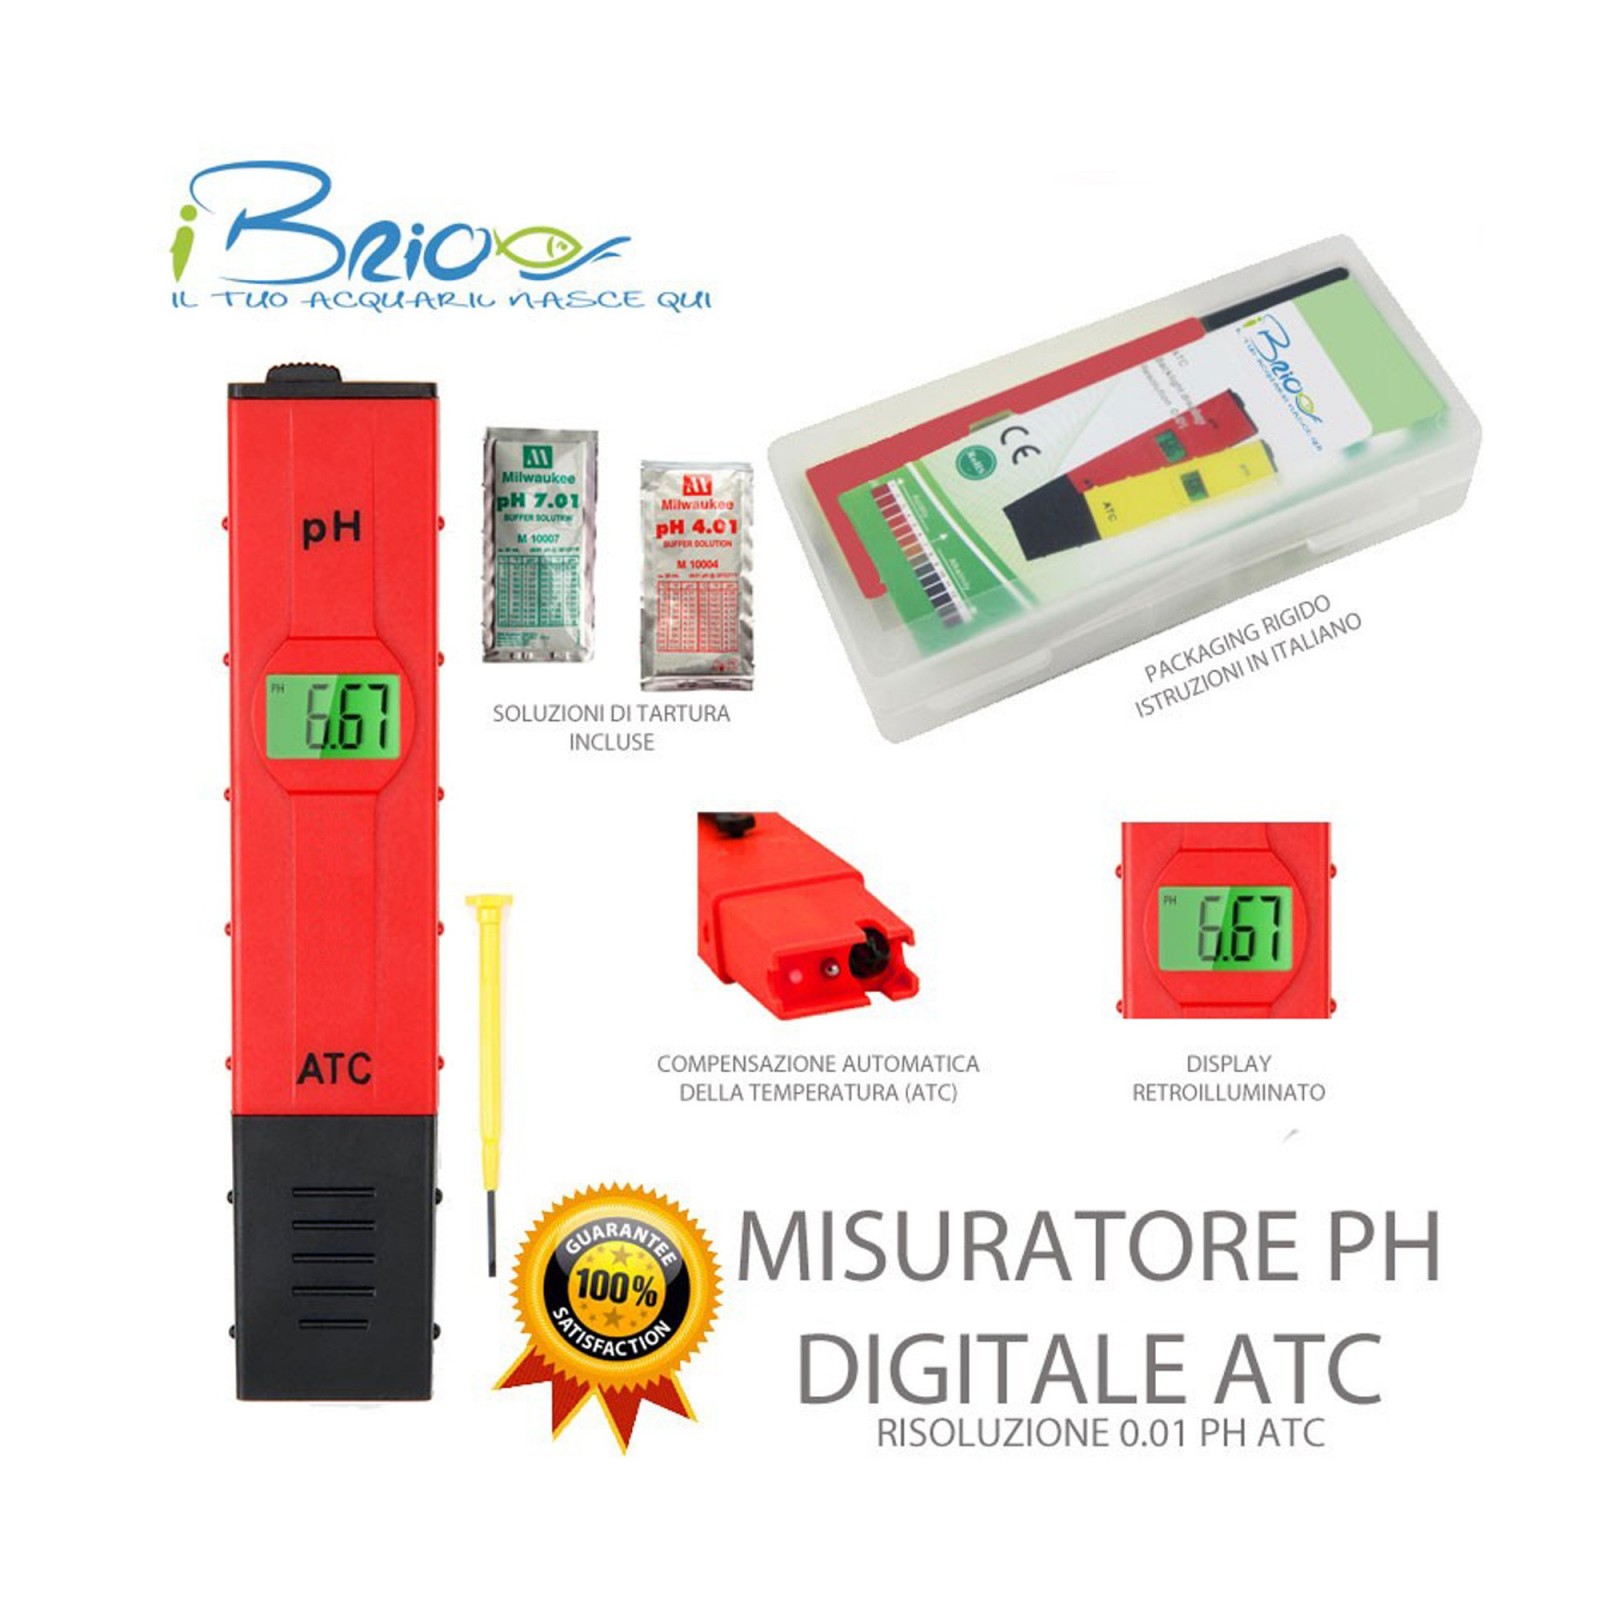 iBrio Misuratore Digitale di pH con compensazione automatica della temperatura - Precisione 0.01